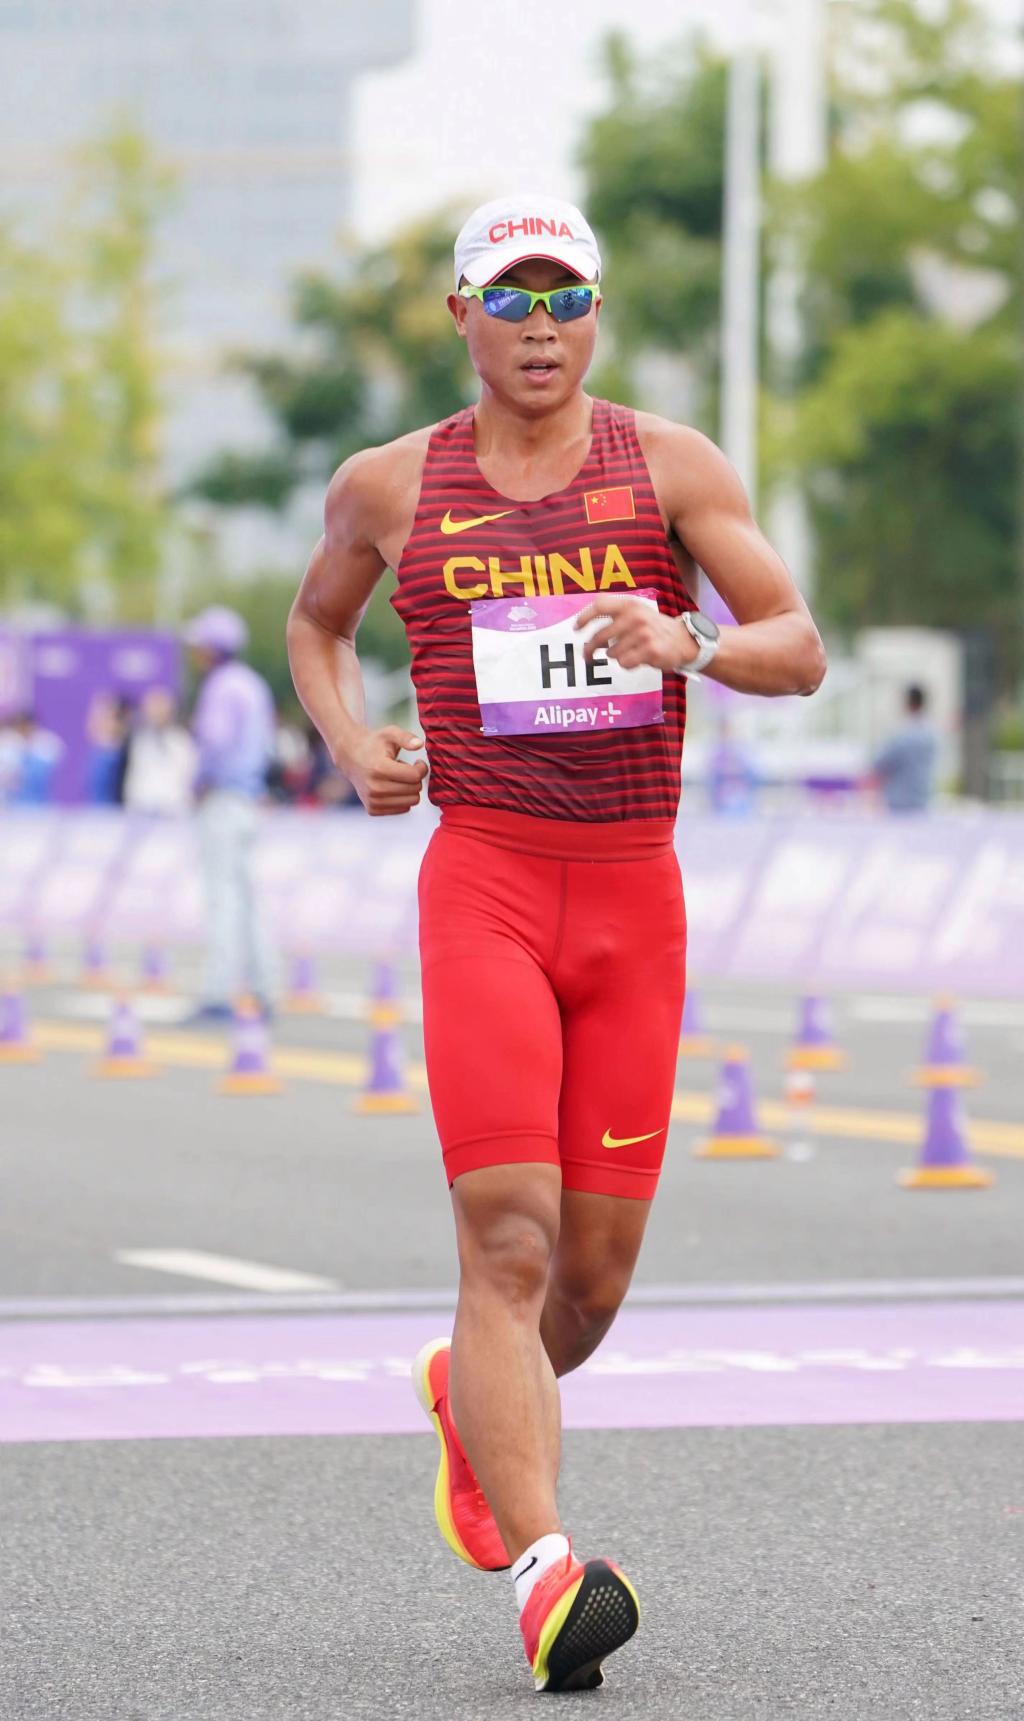 重庆运动员贺相红在杭州第19届亚运会田径混合35公里竞走团体比赛中夺金